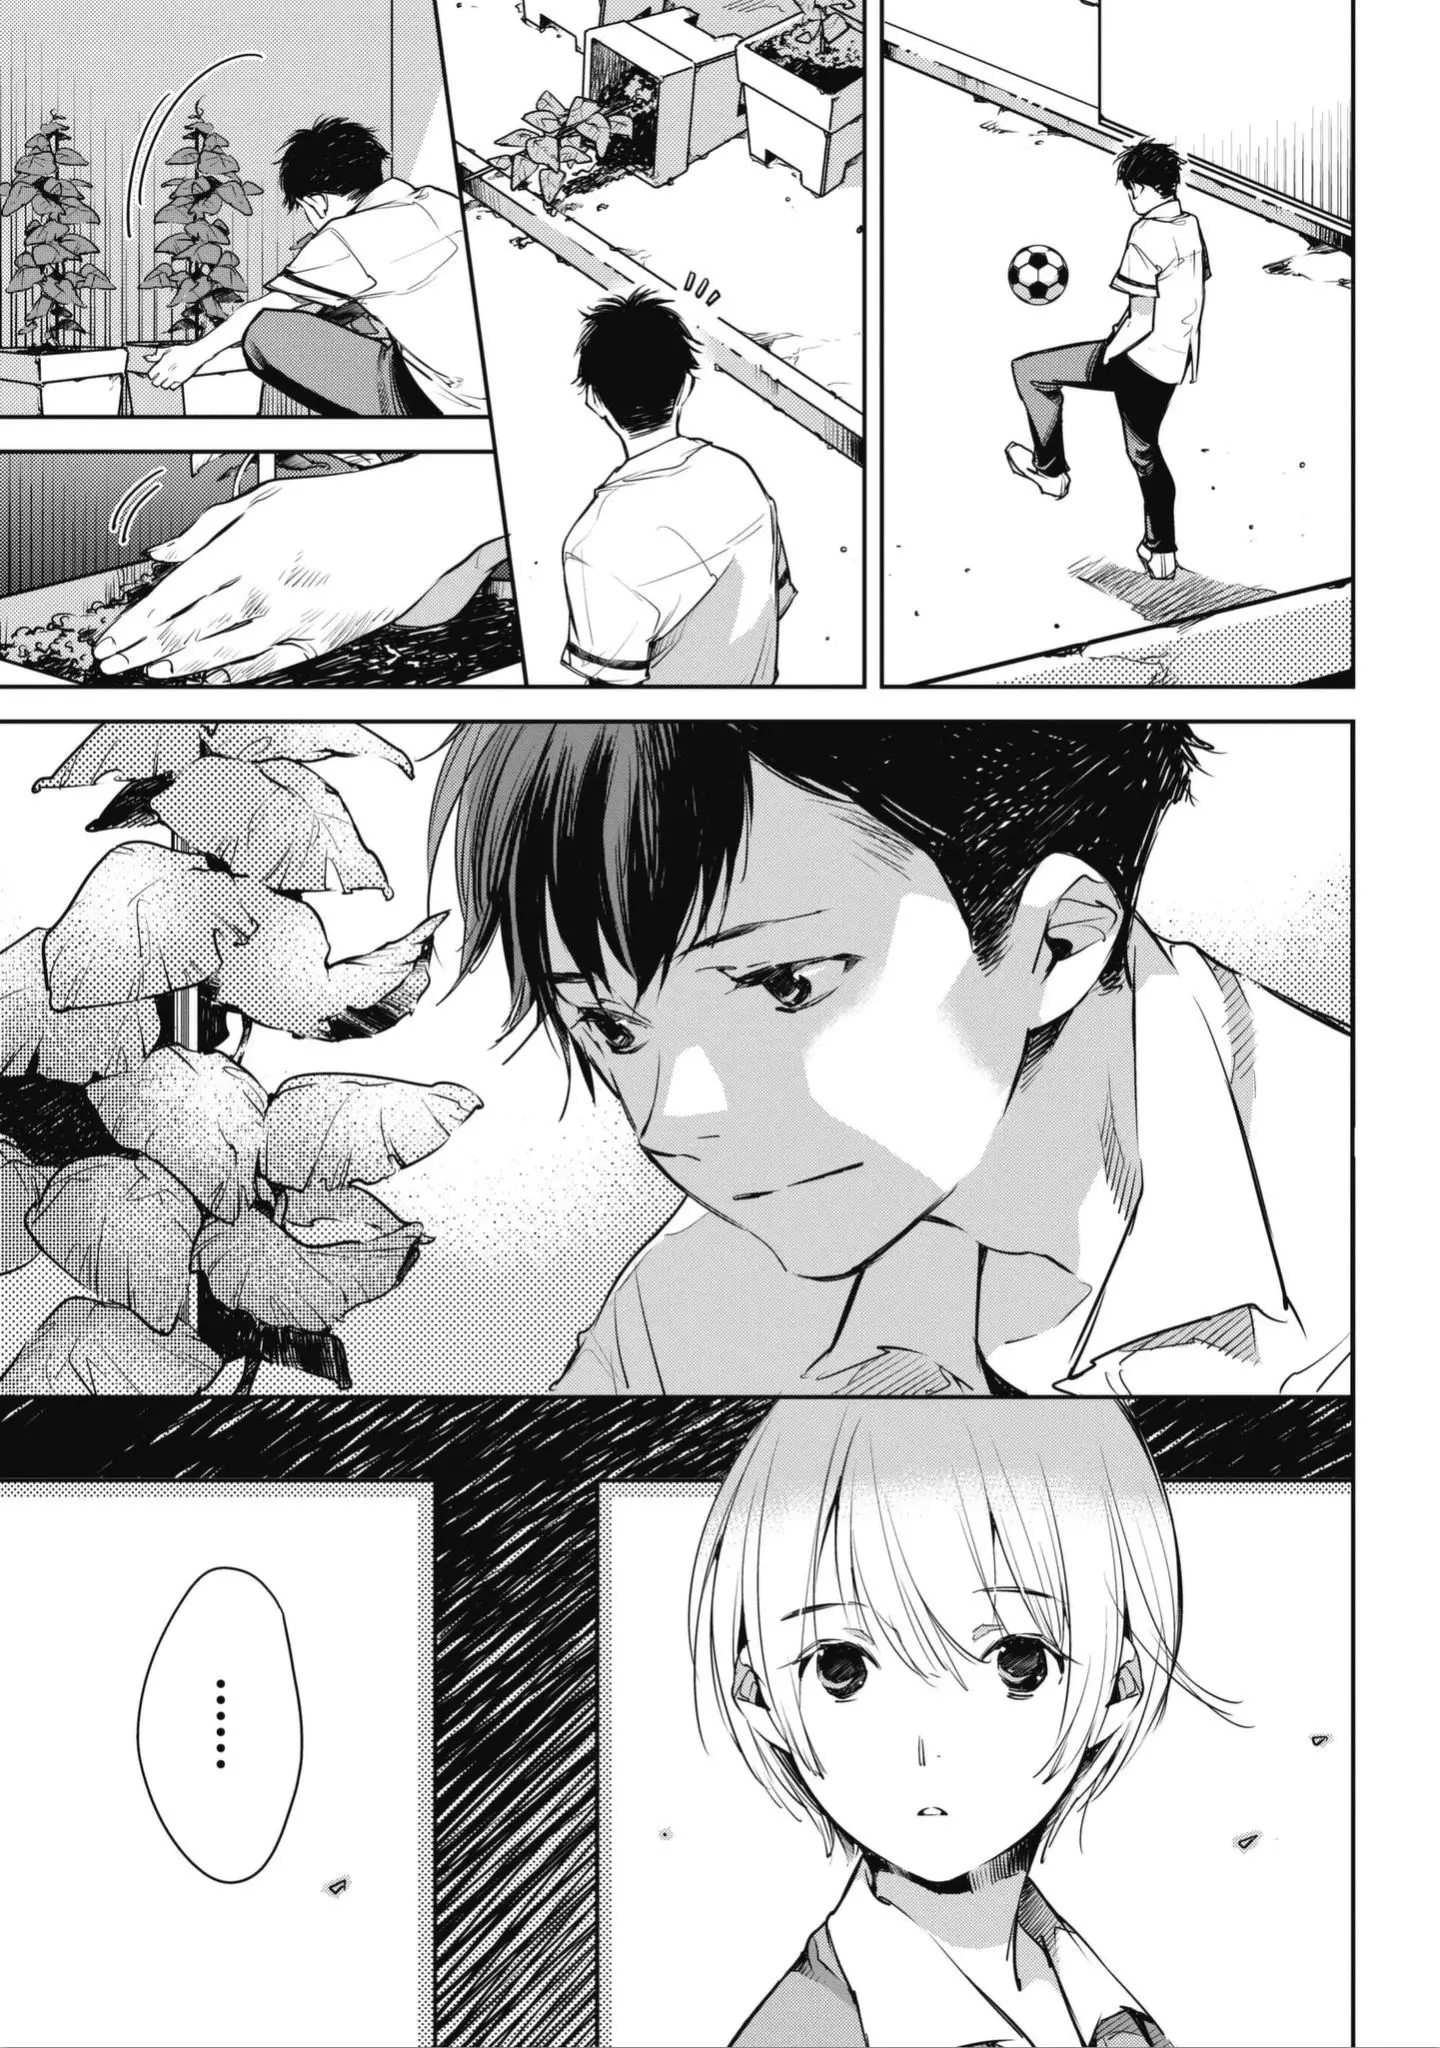 Okashiratsuki - 1 page 15